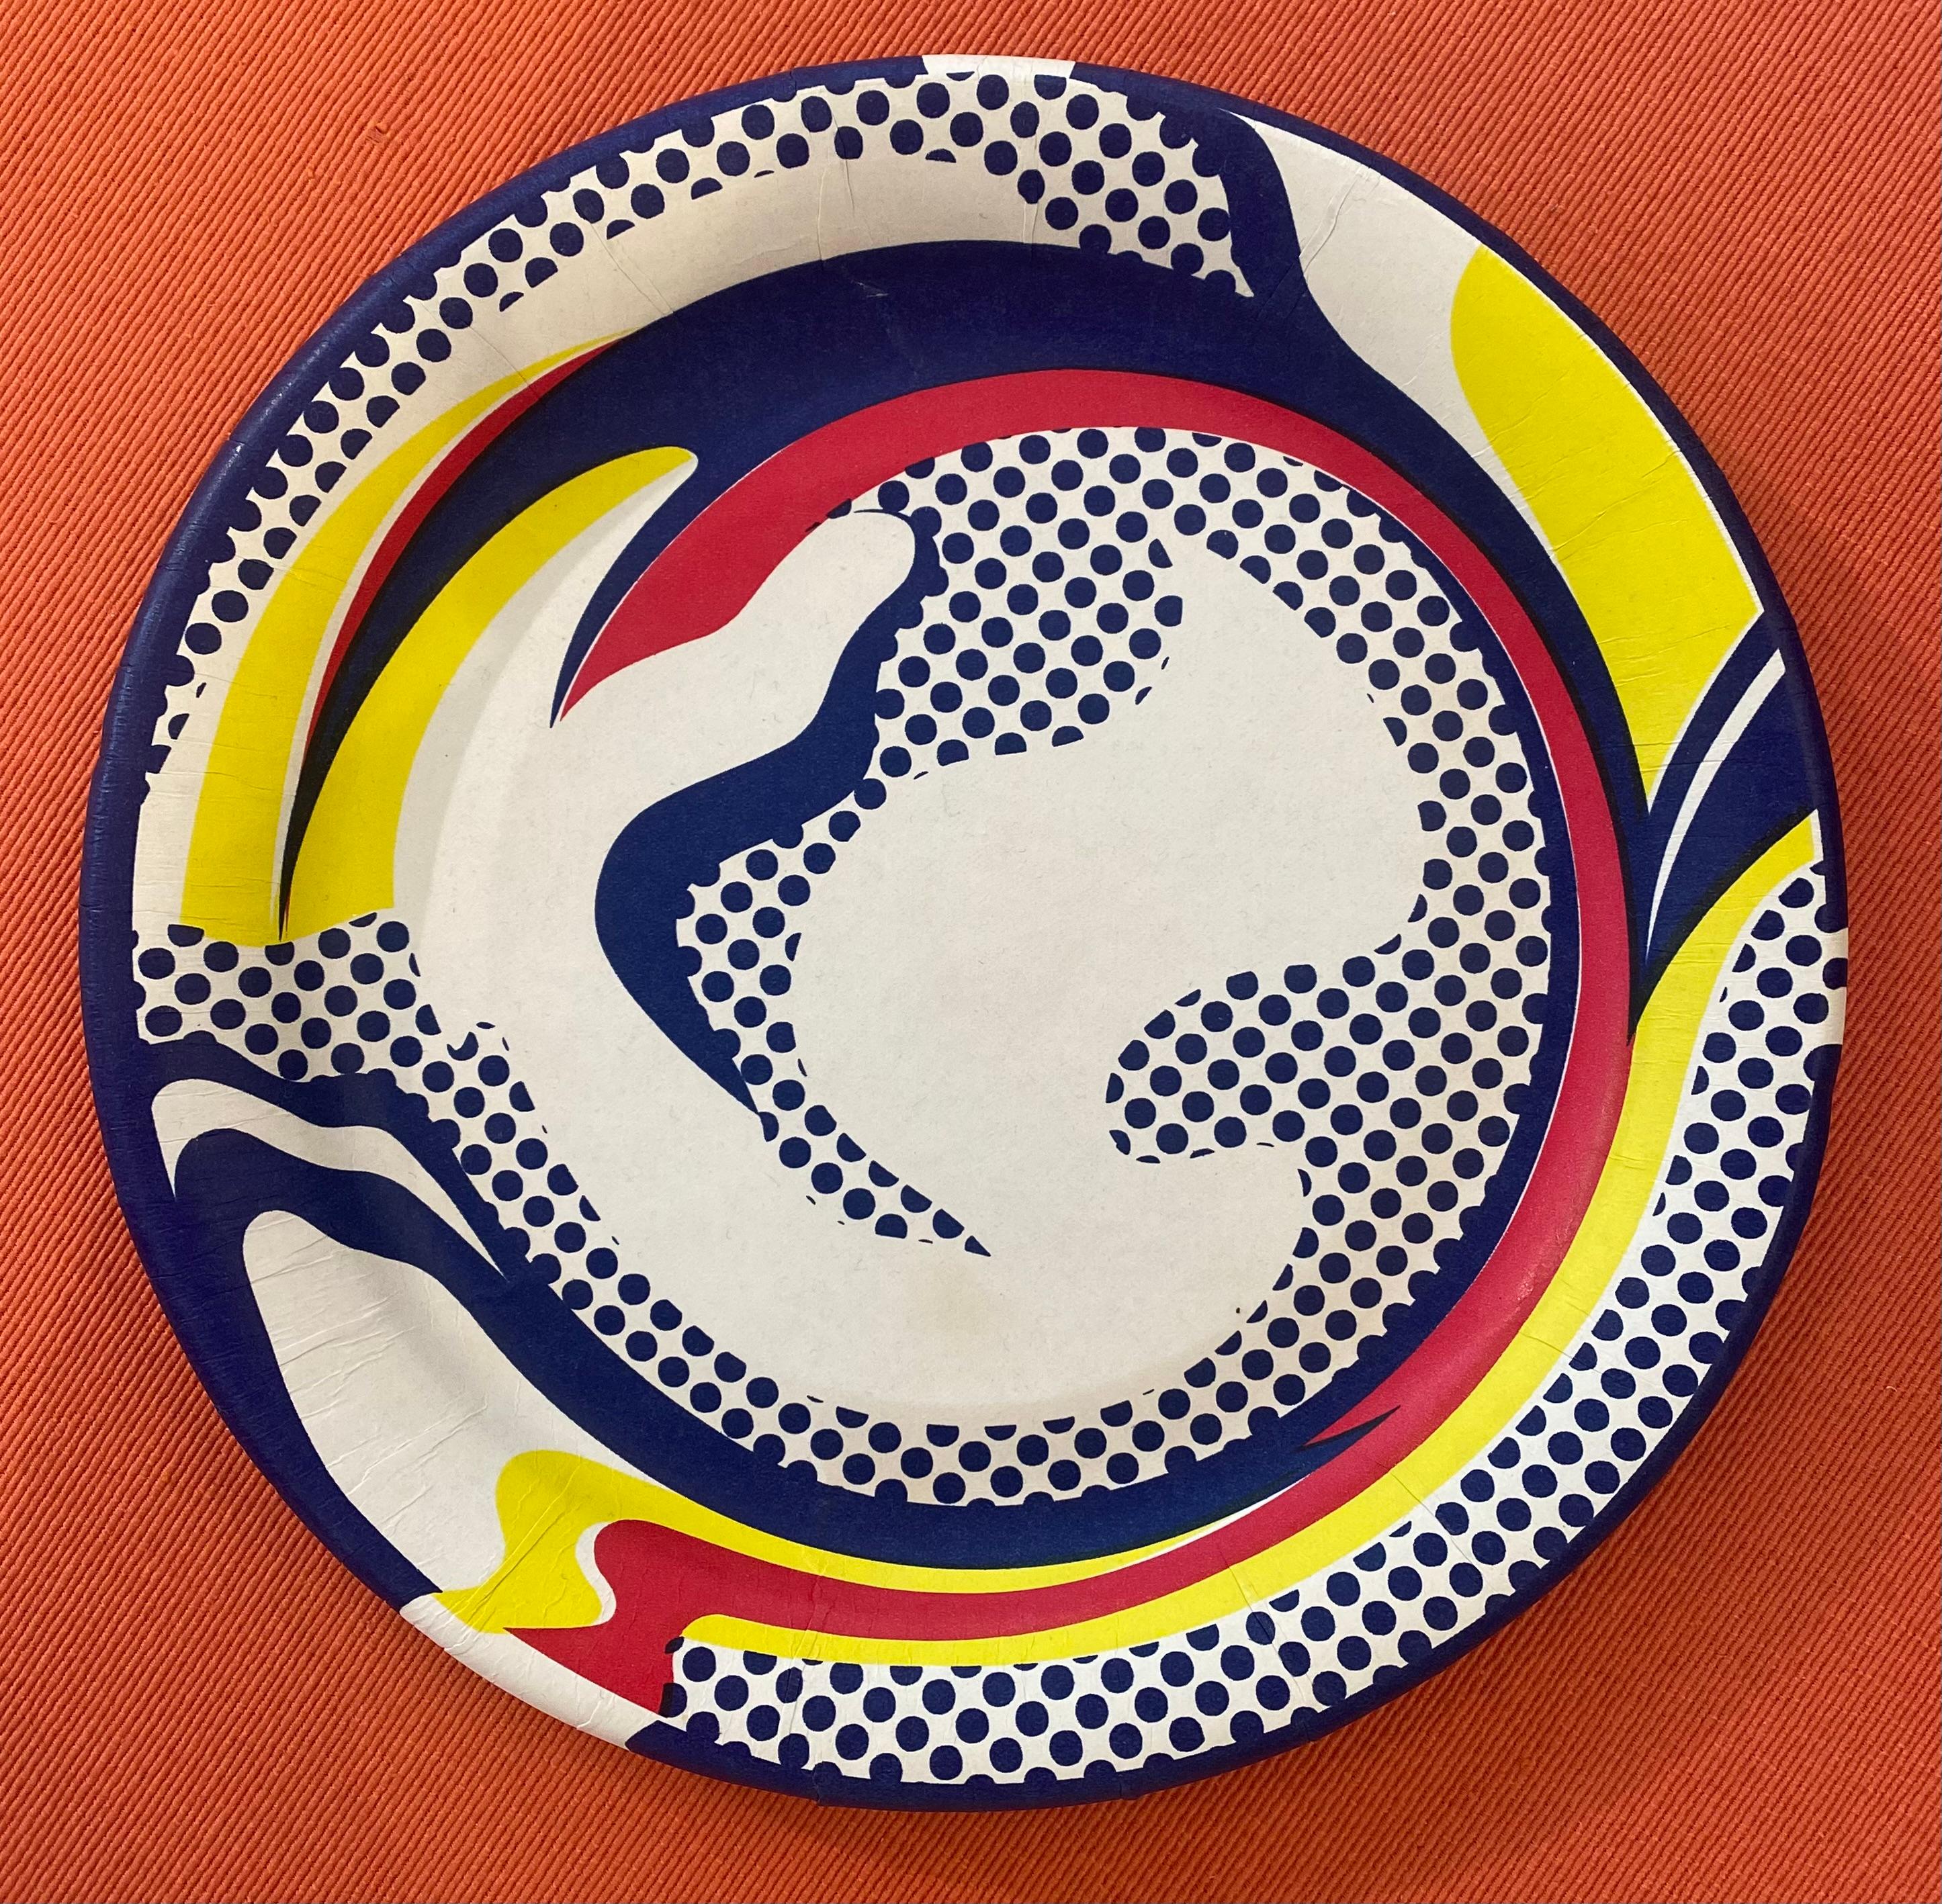 Roy Lichtenstein - Silkscreen on cardboard plate 
1969
Dimensions : ø26cm
Ref : PM/5
Price : €590.


